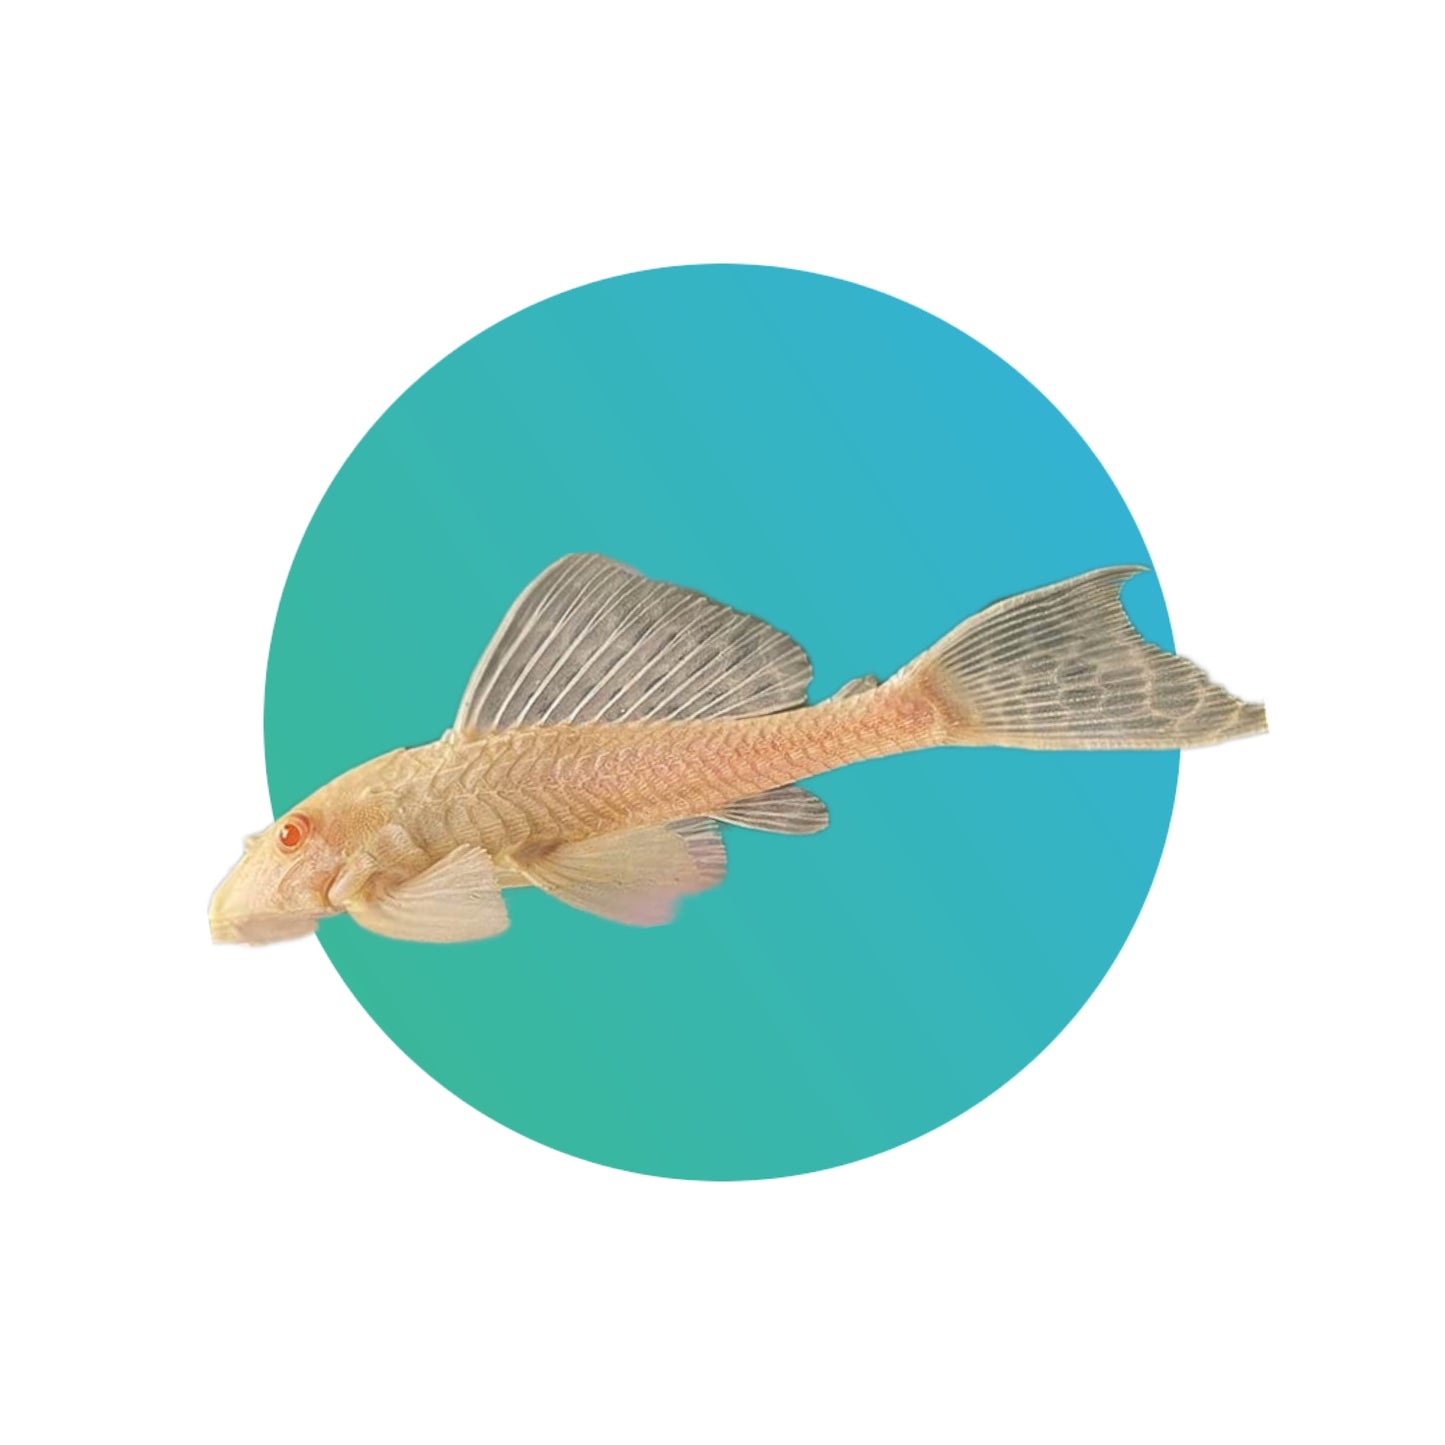 Albino pleco or suckermouth catfish